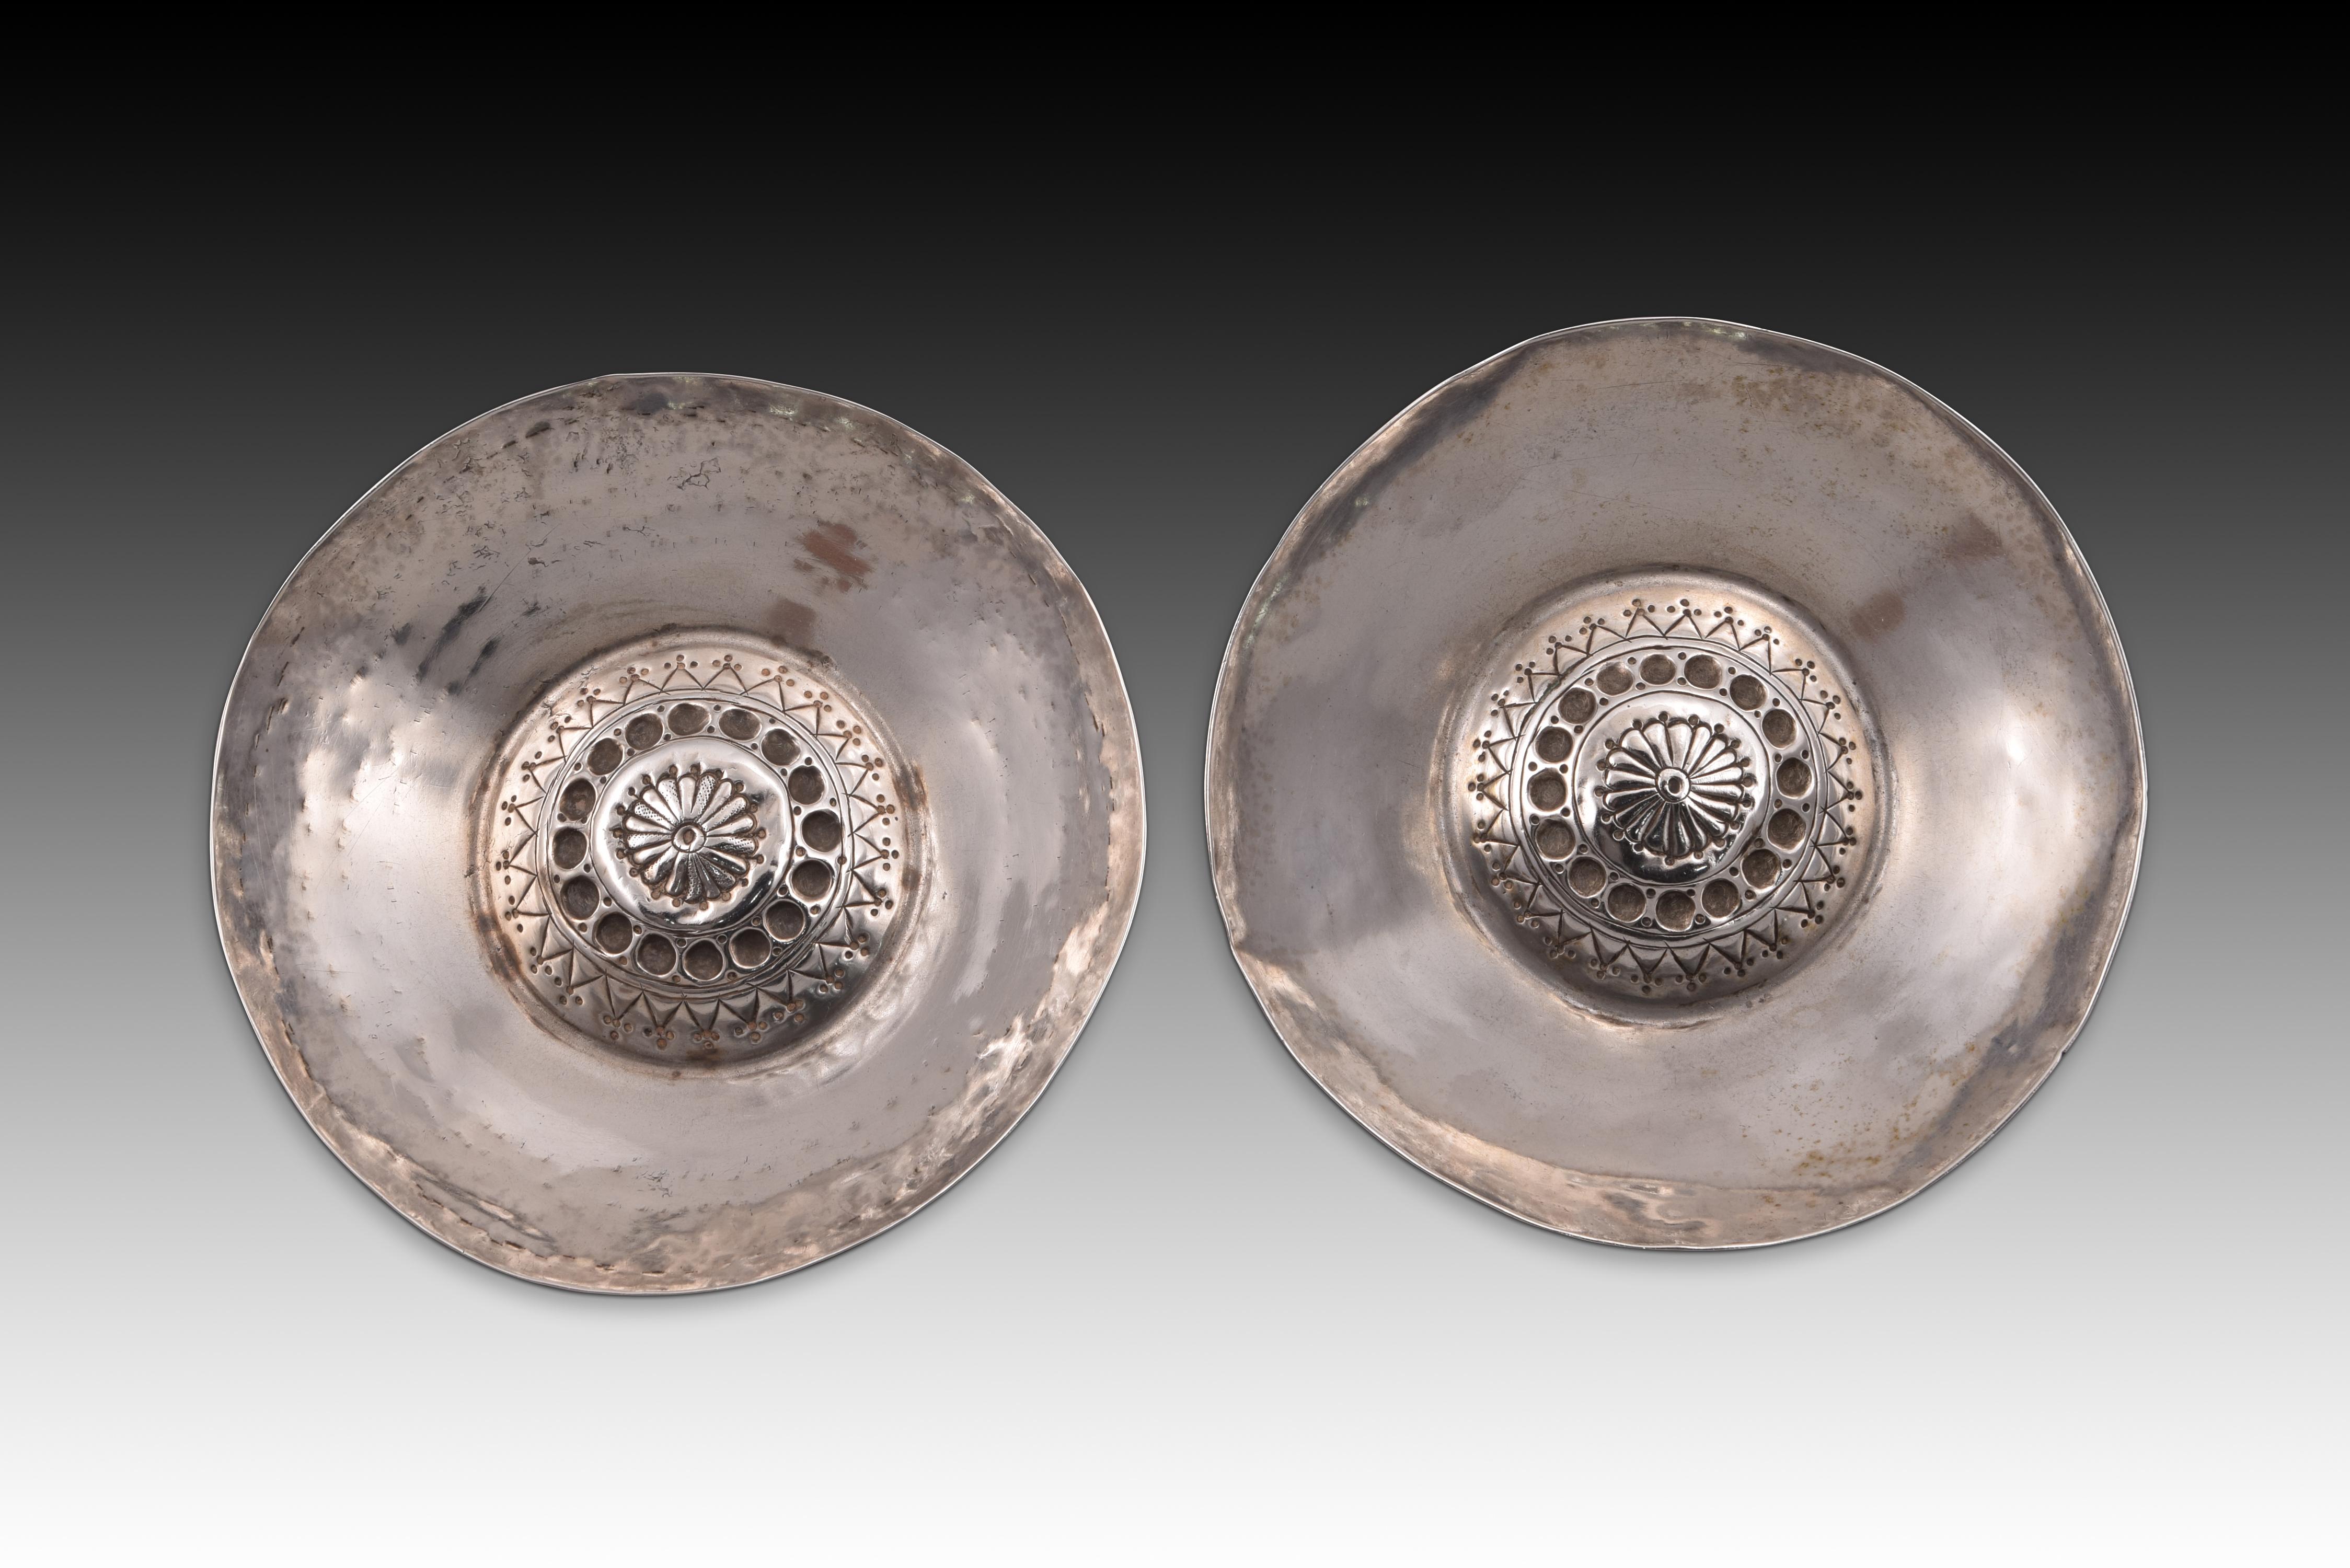 Ein Paar Katavinos. Silber. XVII. Jahrhundert. 
Paar Gläser oder Becher zum Trinken von Wein aus Silber in seiner Farbe, die einen kleinen und niedrigen zylindrischen Fuß haben, einen ausgestellten Rand nach oben und einen zentralen Bereich nach